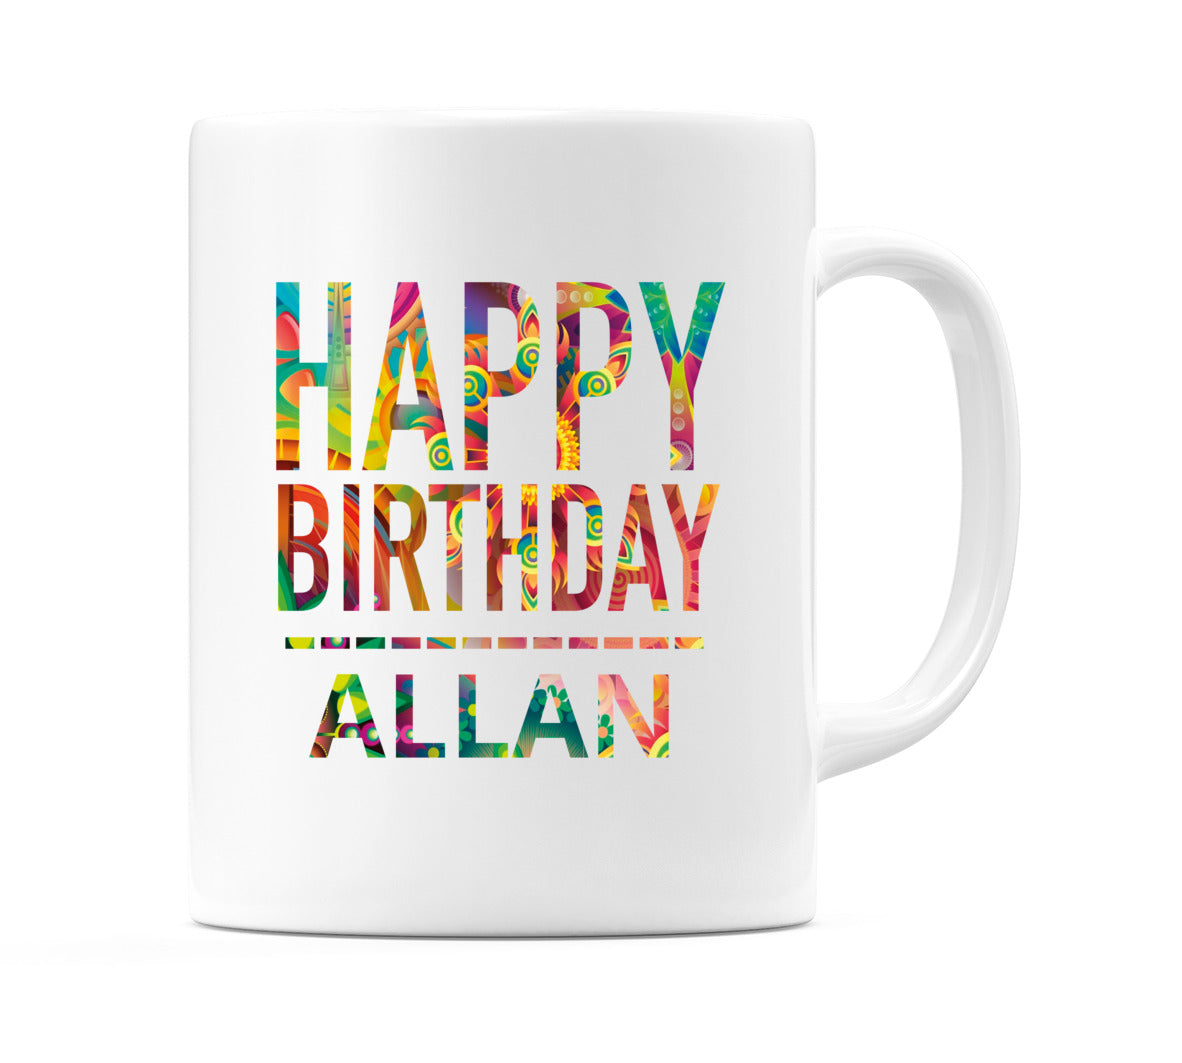 Happy Birthday Allan (Tie Dye Effect) Mug Cup by WeDoMugs